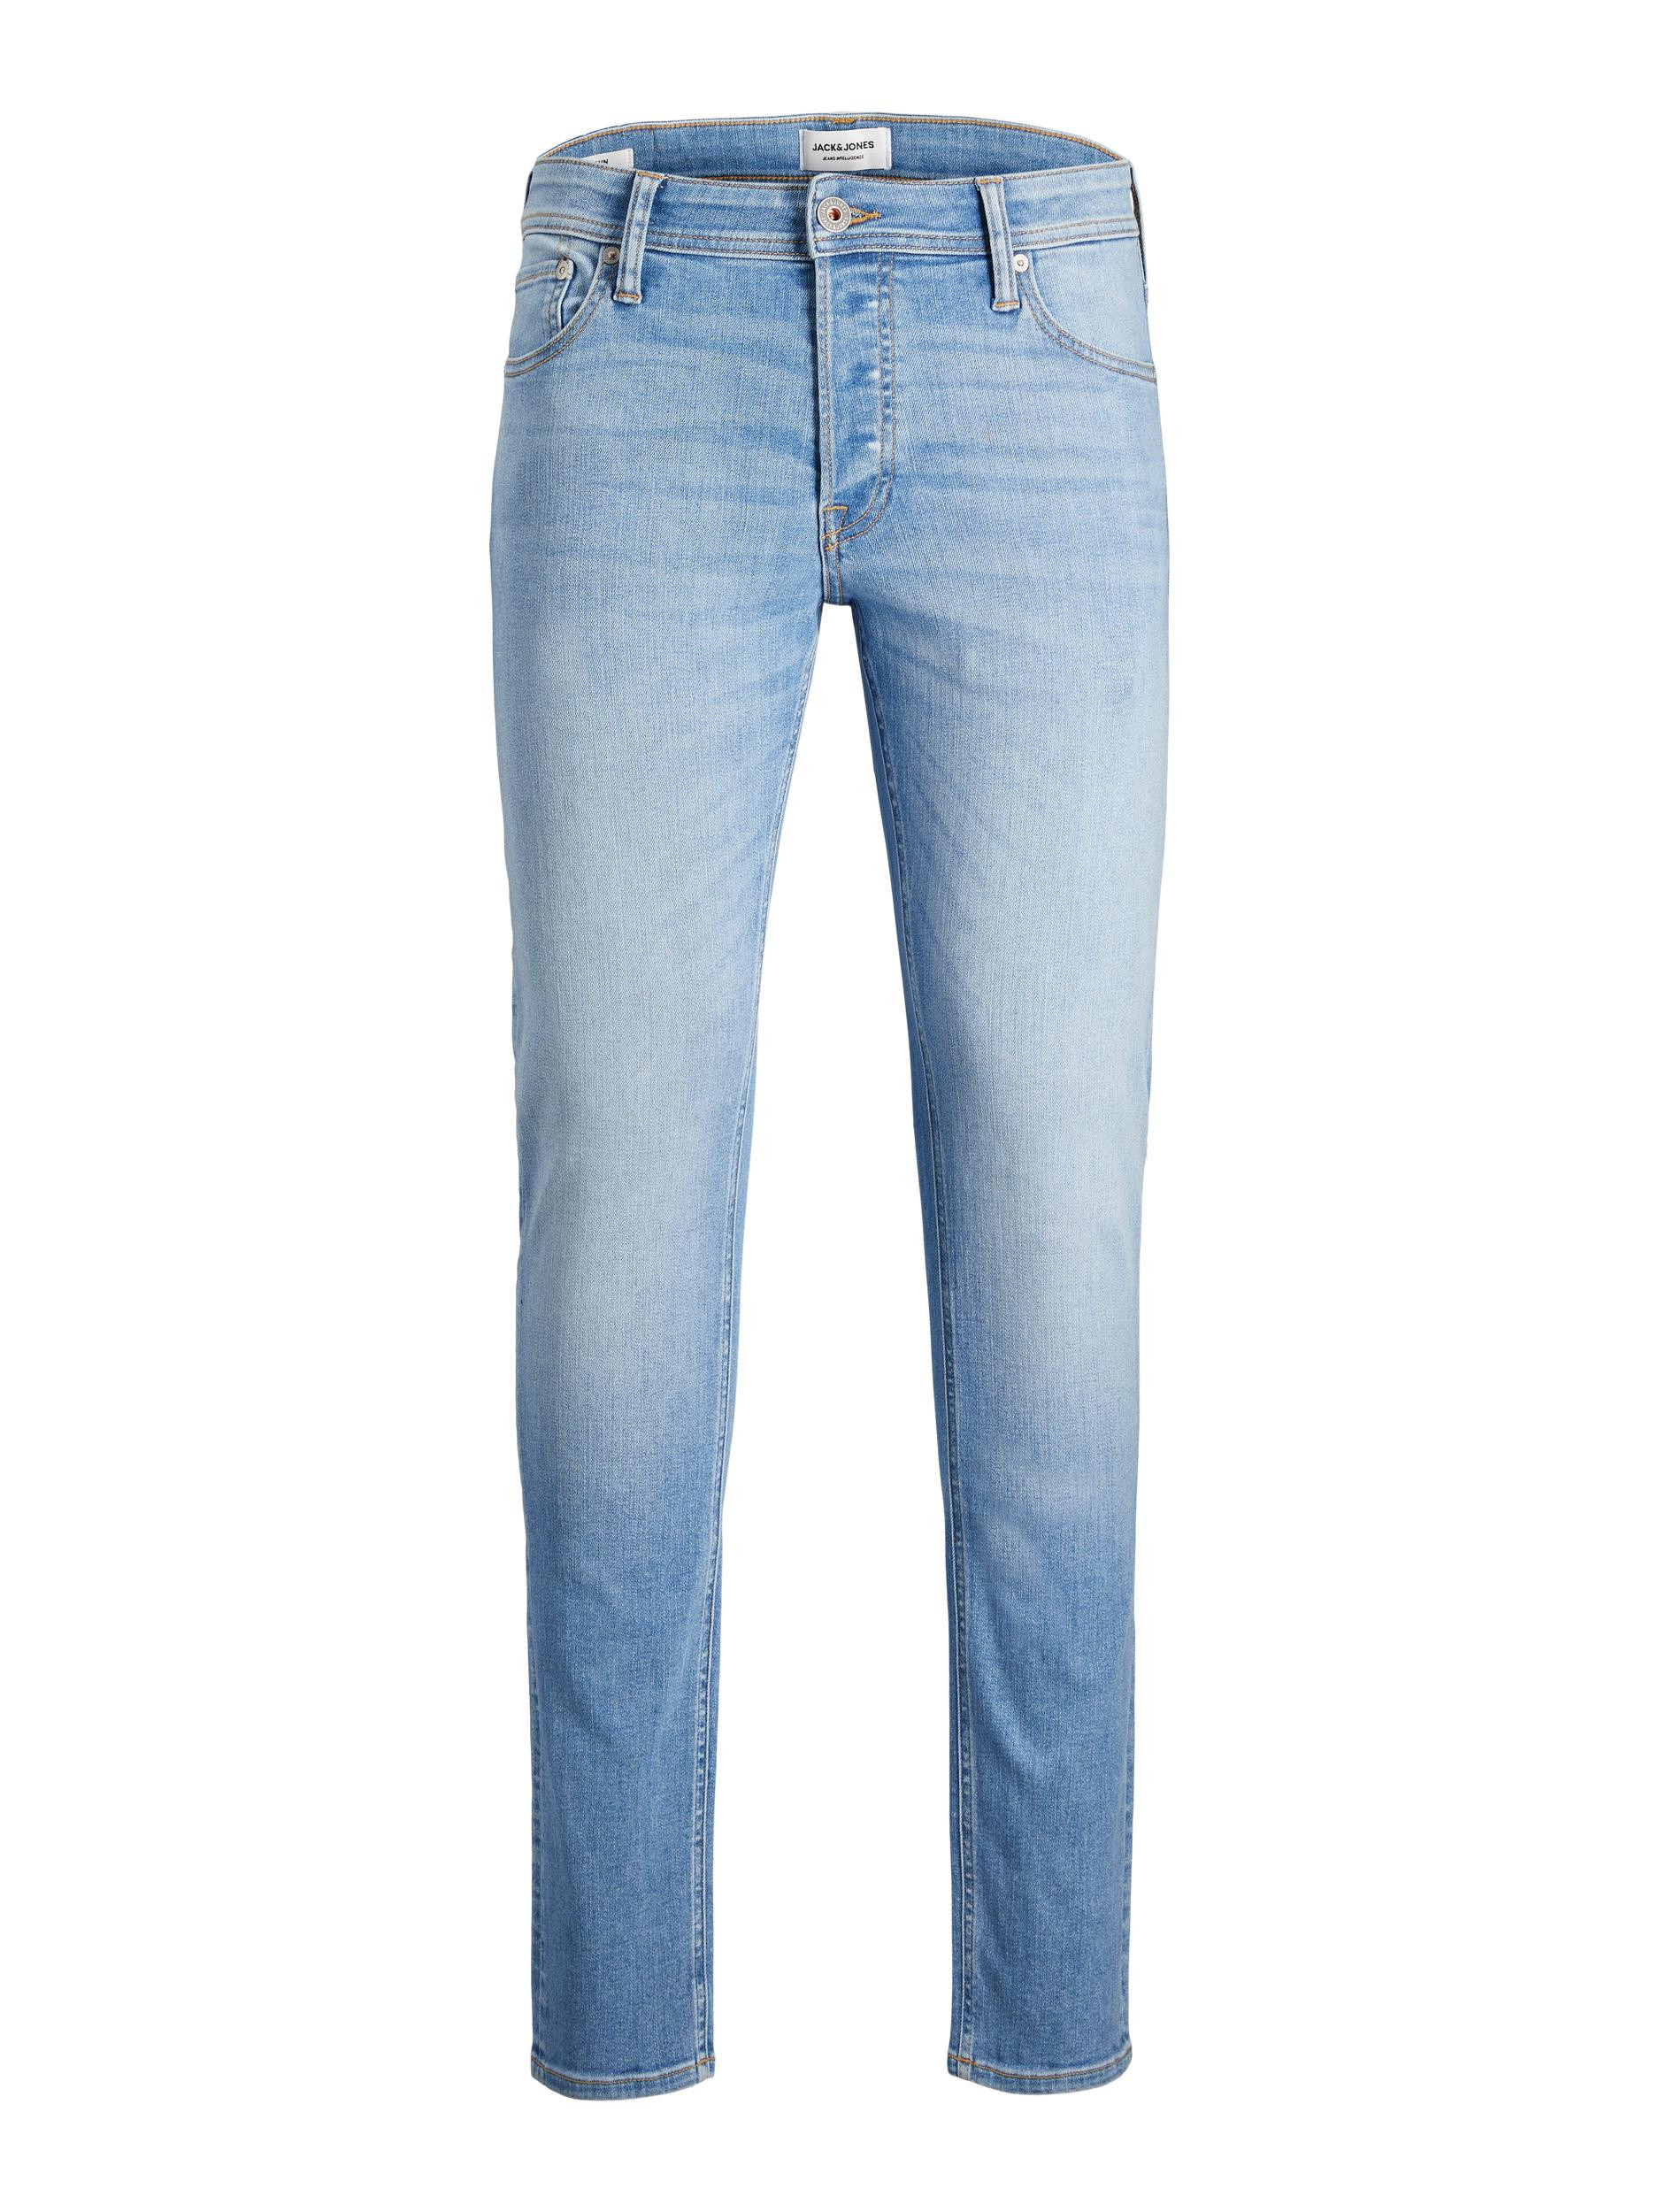 Jack & Jones - Jeans cinque tasche slim fit, Denim, large image number 0